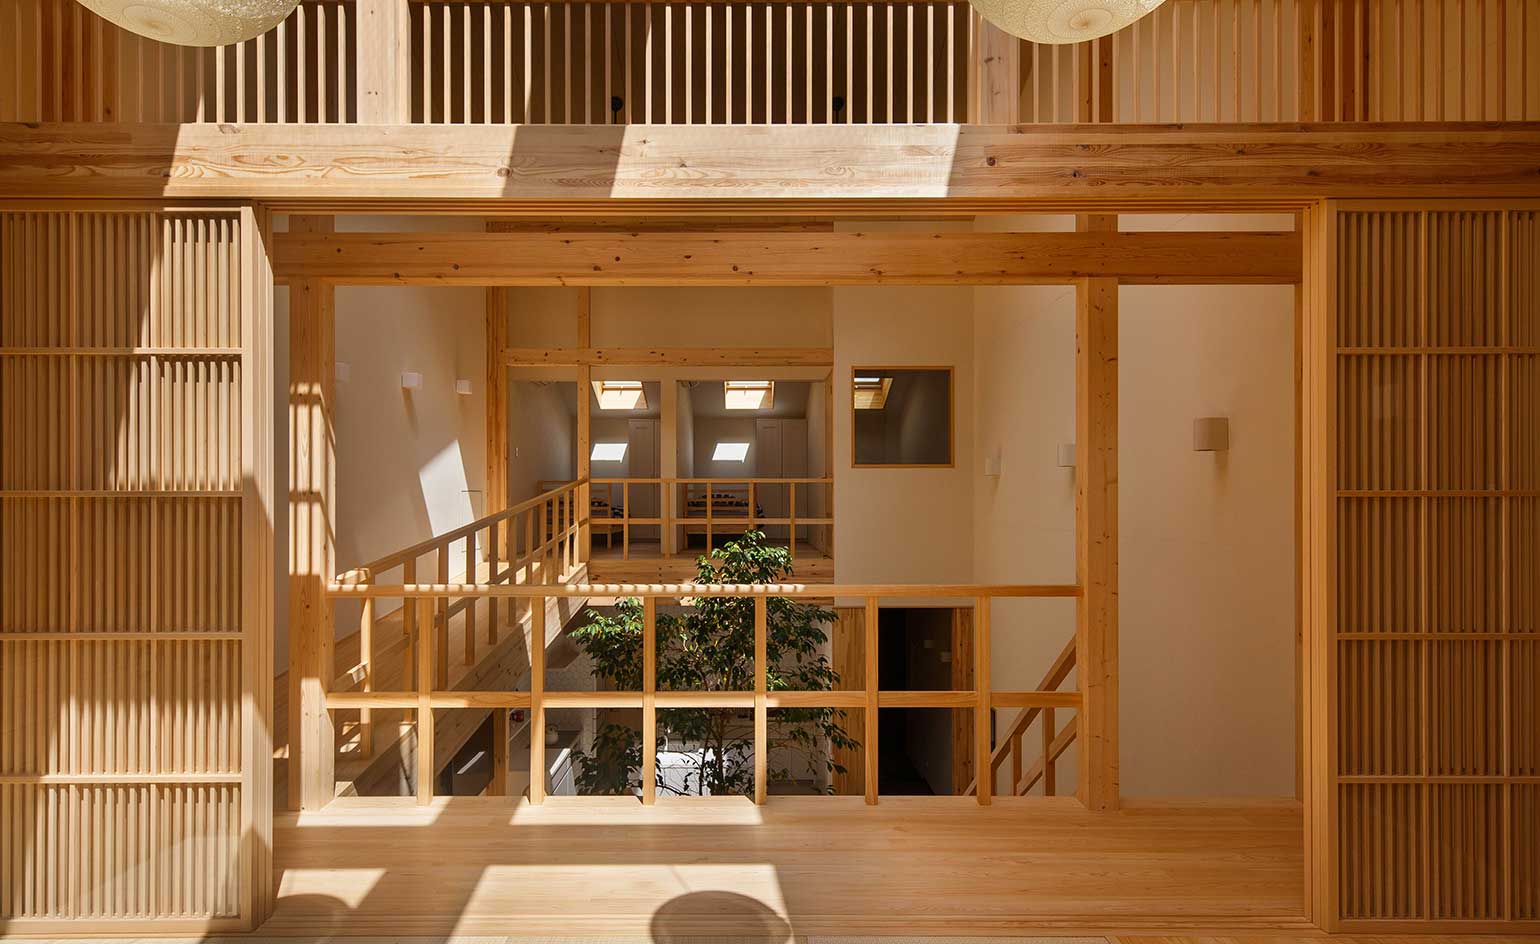 Modern Japanese Houses Inspiring Minimalism And Avant Garde Living. Wallpaper*